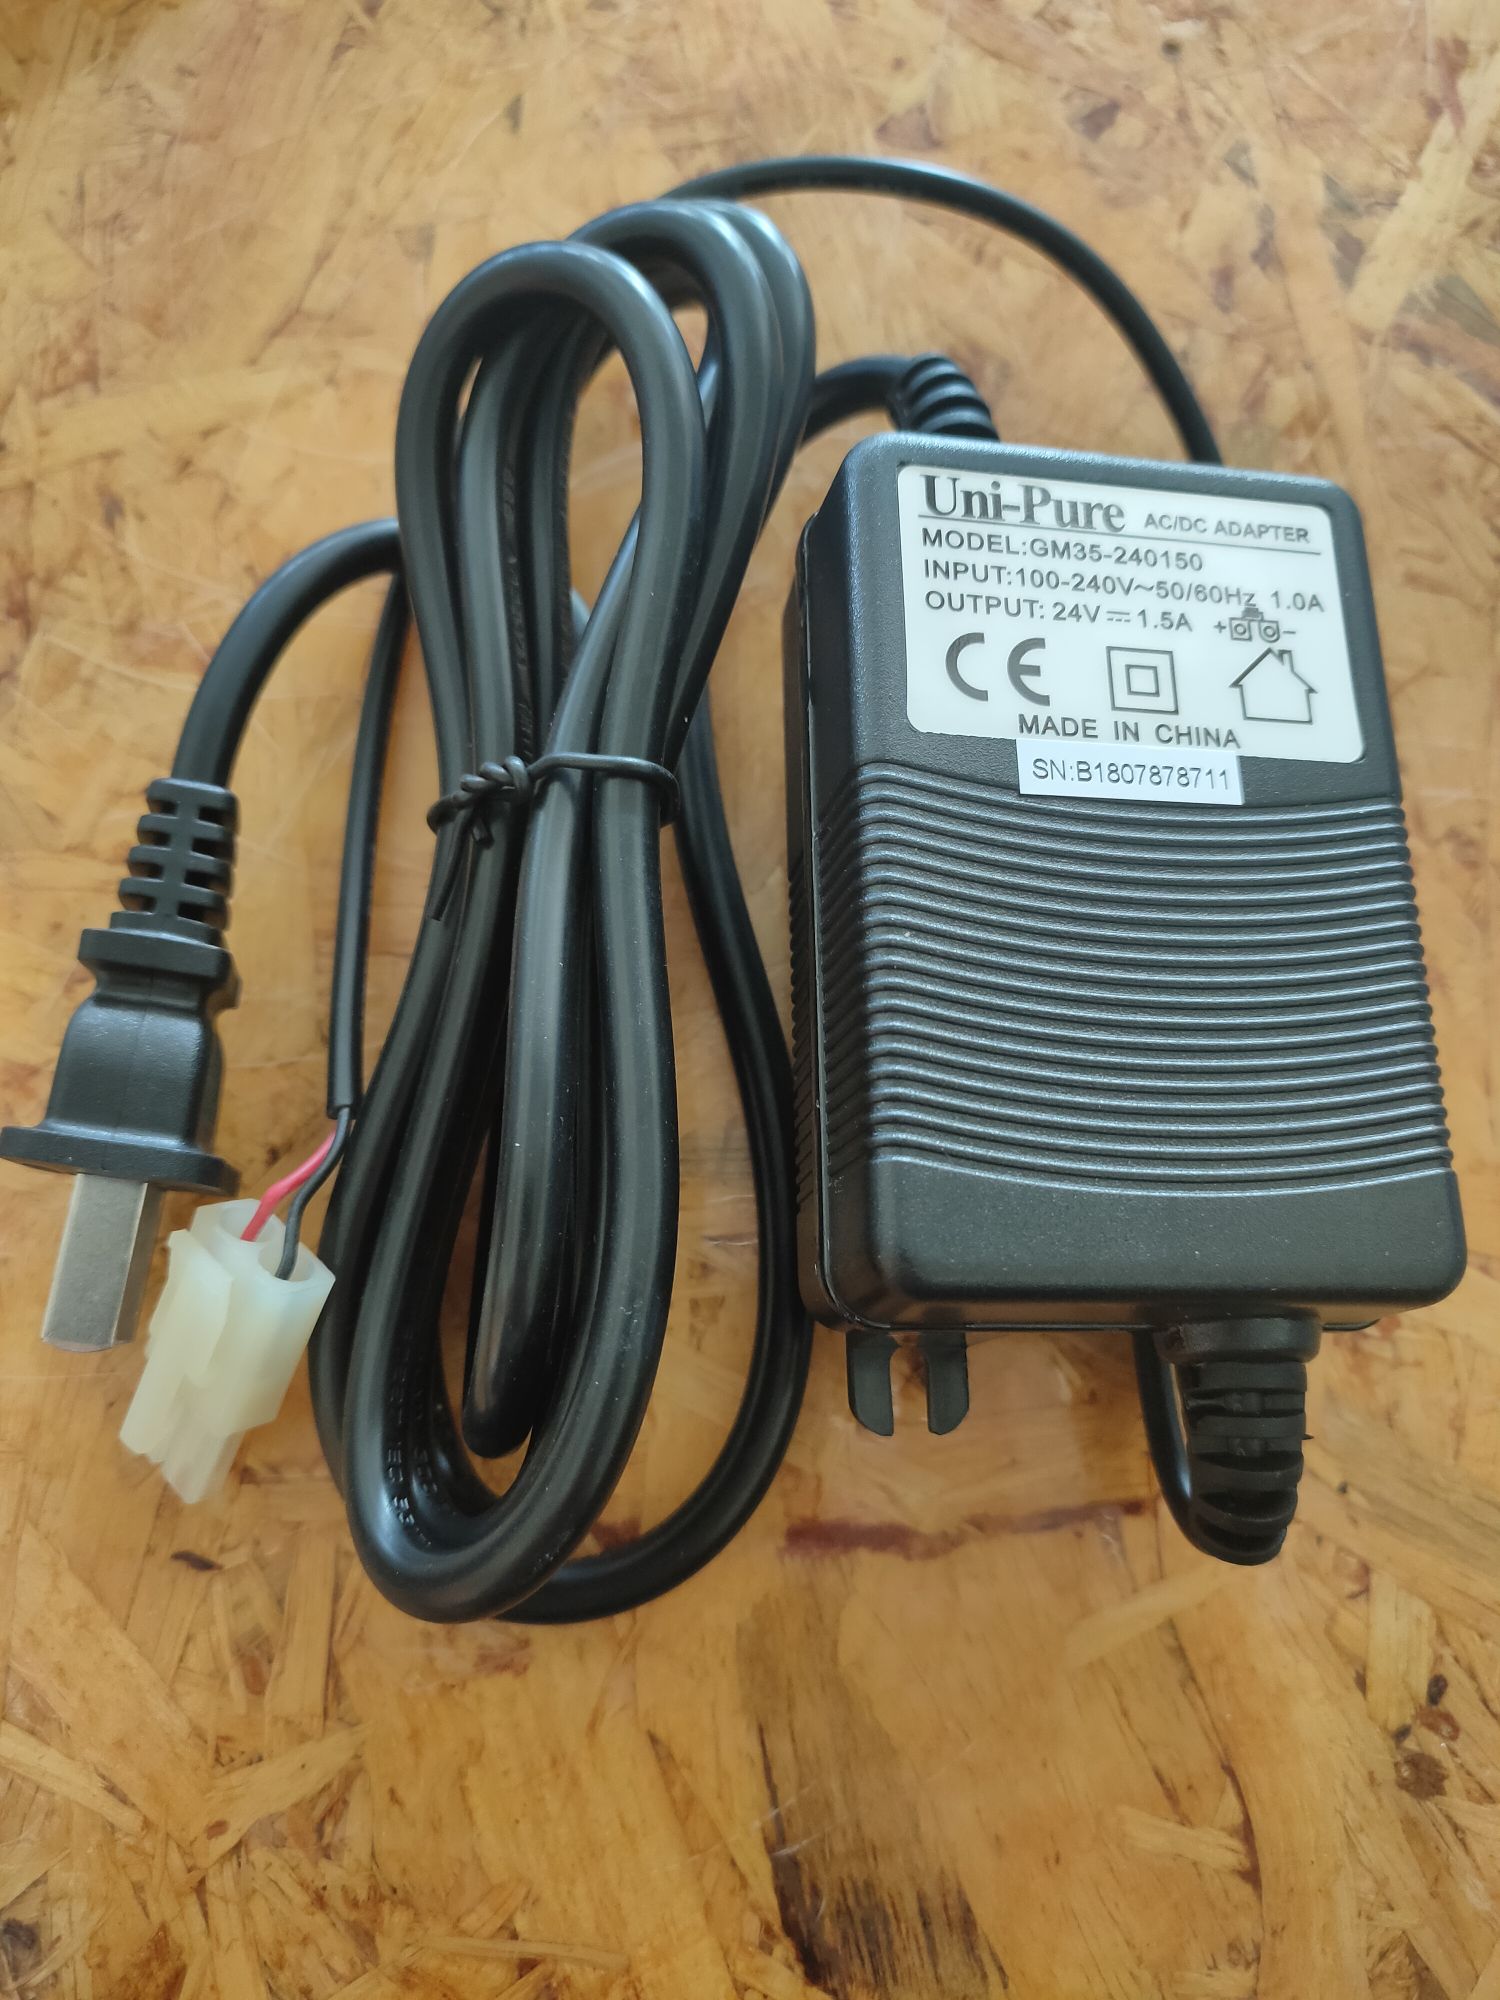 อะแดปเตอร์ Unipure AC/DC Adapter Input 100-240V~50/60Hz 1.0A Output24V-1.5A